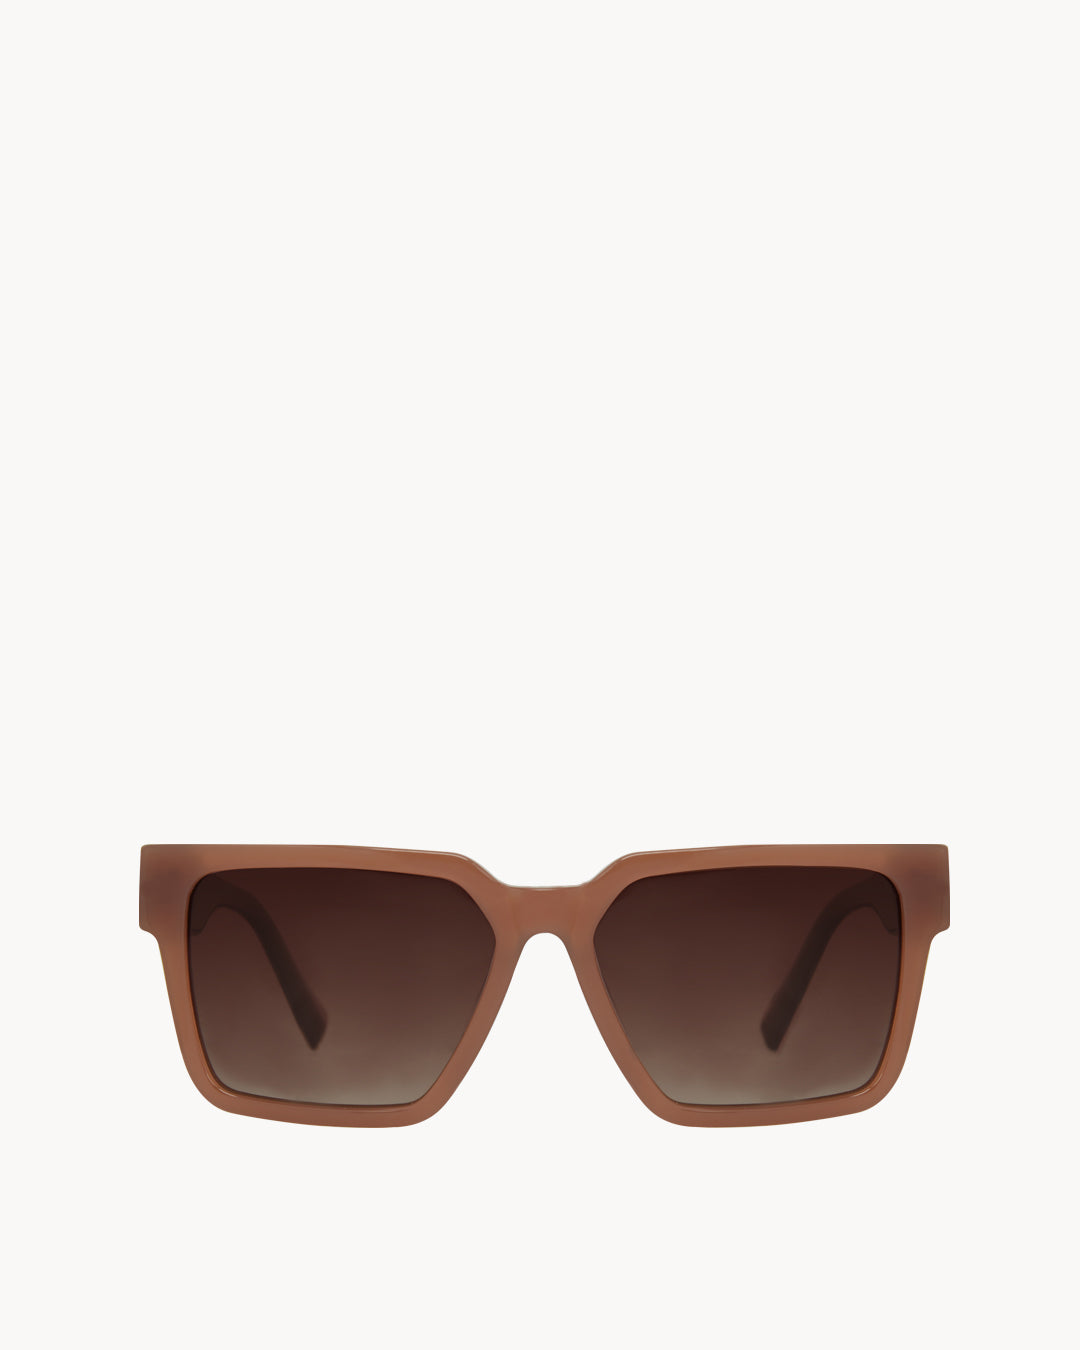 Valletta Retro Brown Sunglasses